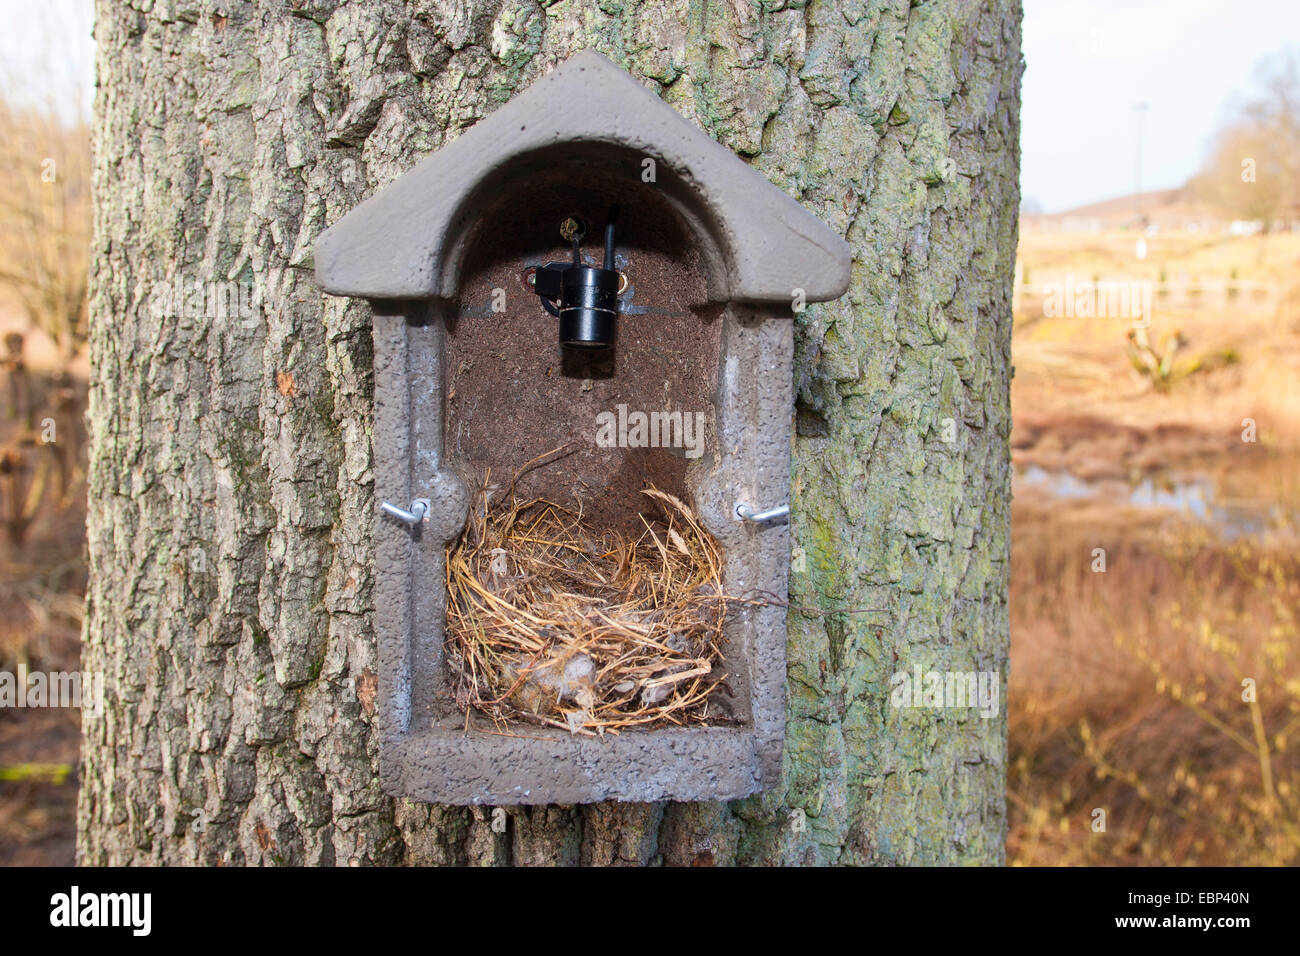 Vogel-Kasten, Nistkasten mit Kamera im Nistkasten, die übertragen werden kann Bilder was geschieht mit einem Bildschirm, Deutschland Stockfoto